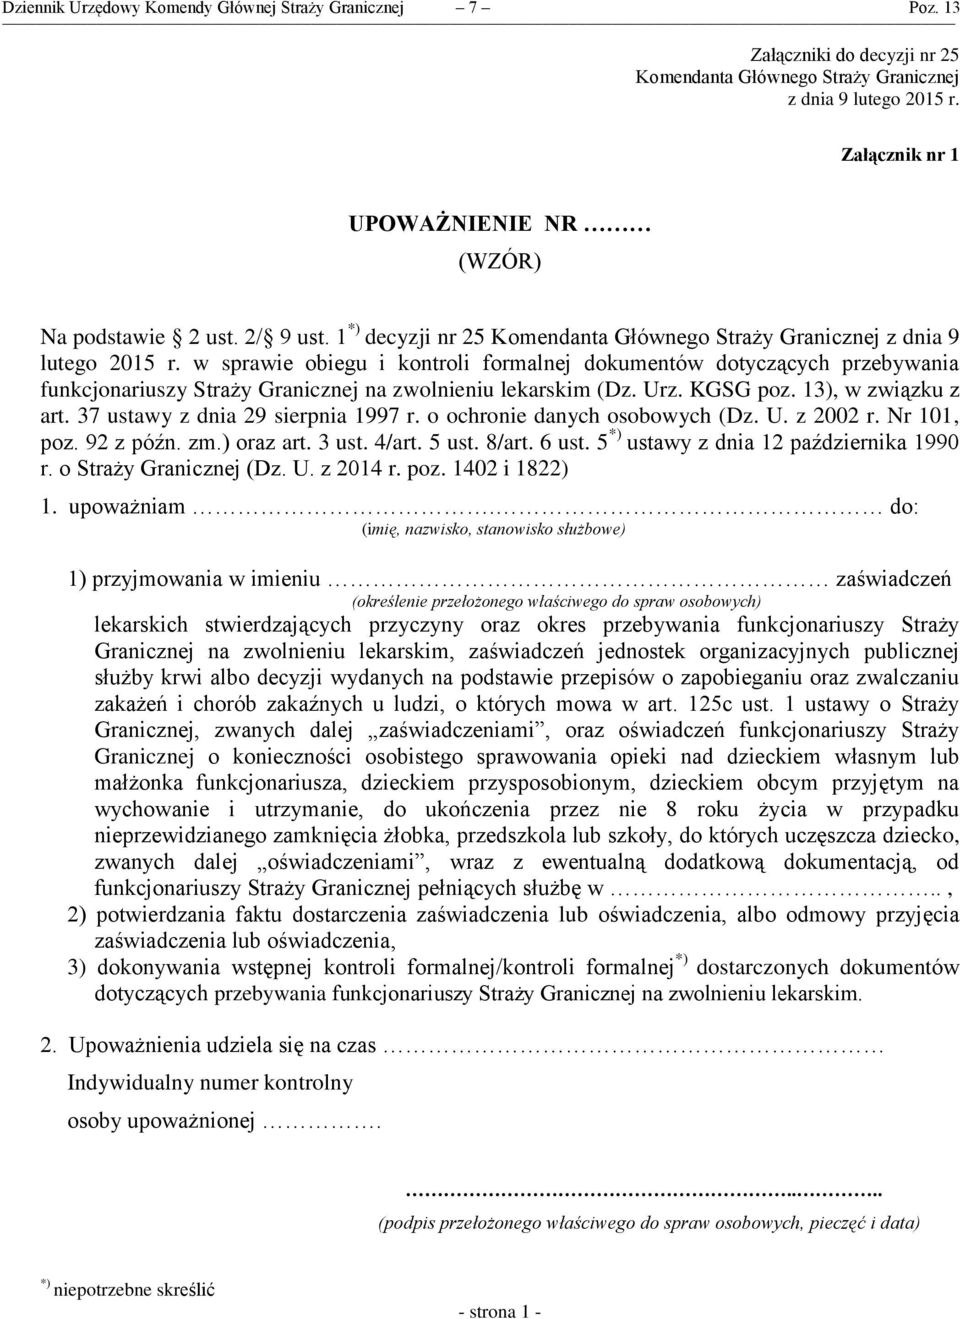 w sprawie obiegu i kontroli formalnej dokumentów dotyczących przebywania funkcjonariuszy Straży Granicznej na zwolnieniu lekarskim (Dz. Urz. KGSG poz. 13), w związku z art.